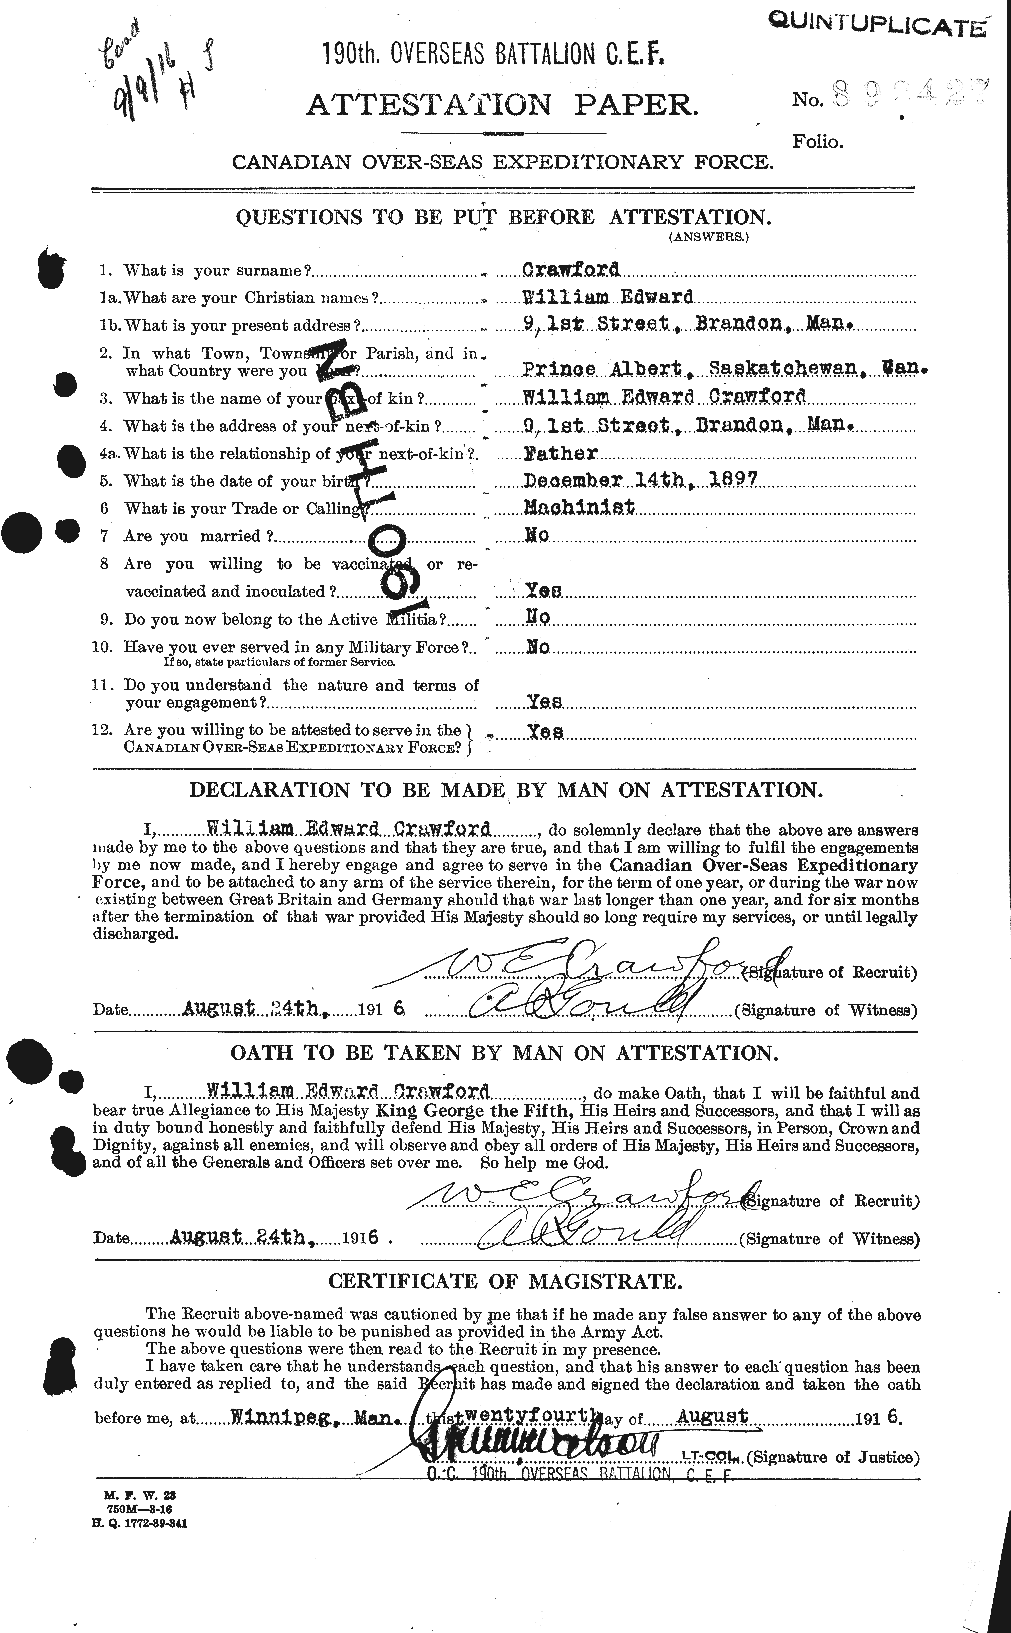 Dossiers du Personnel de la Première Guerre mondiale - CEC 061146a